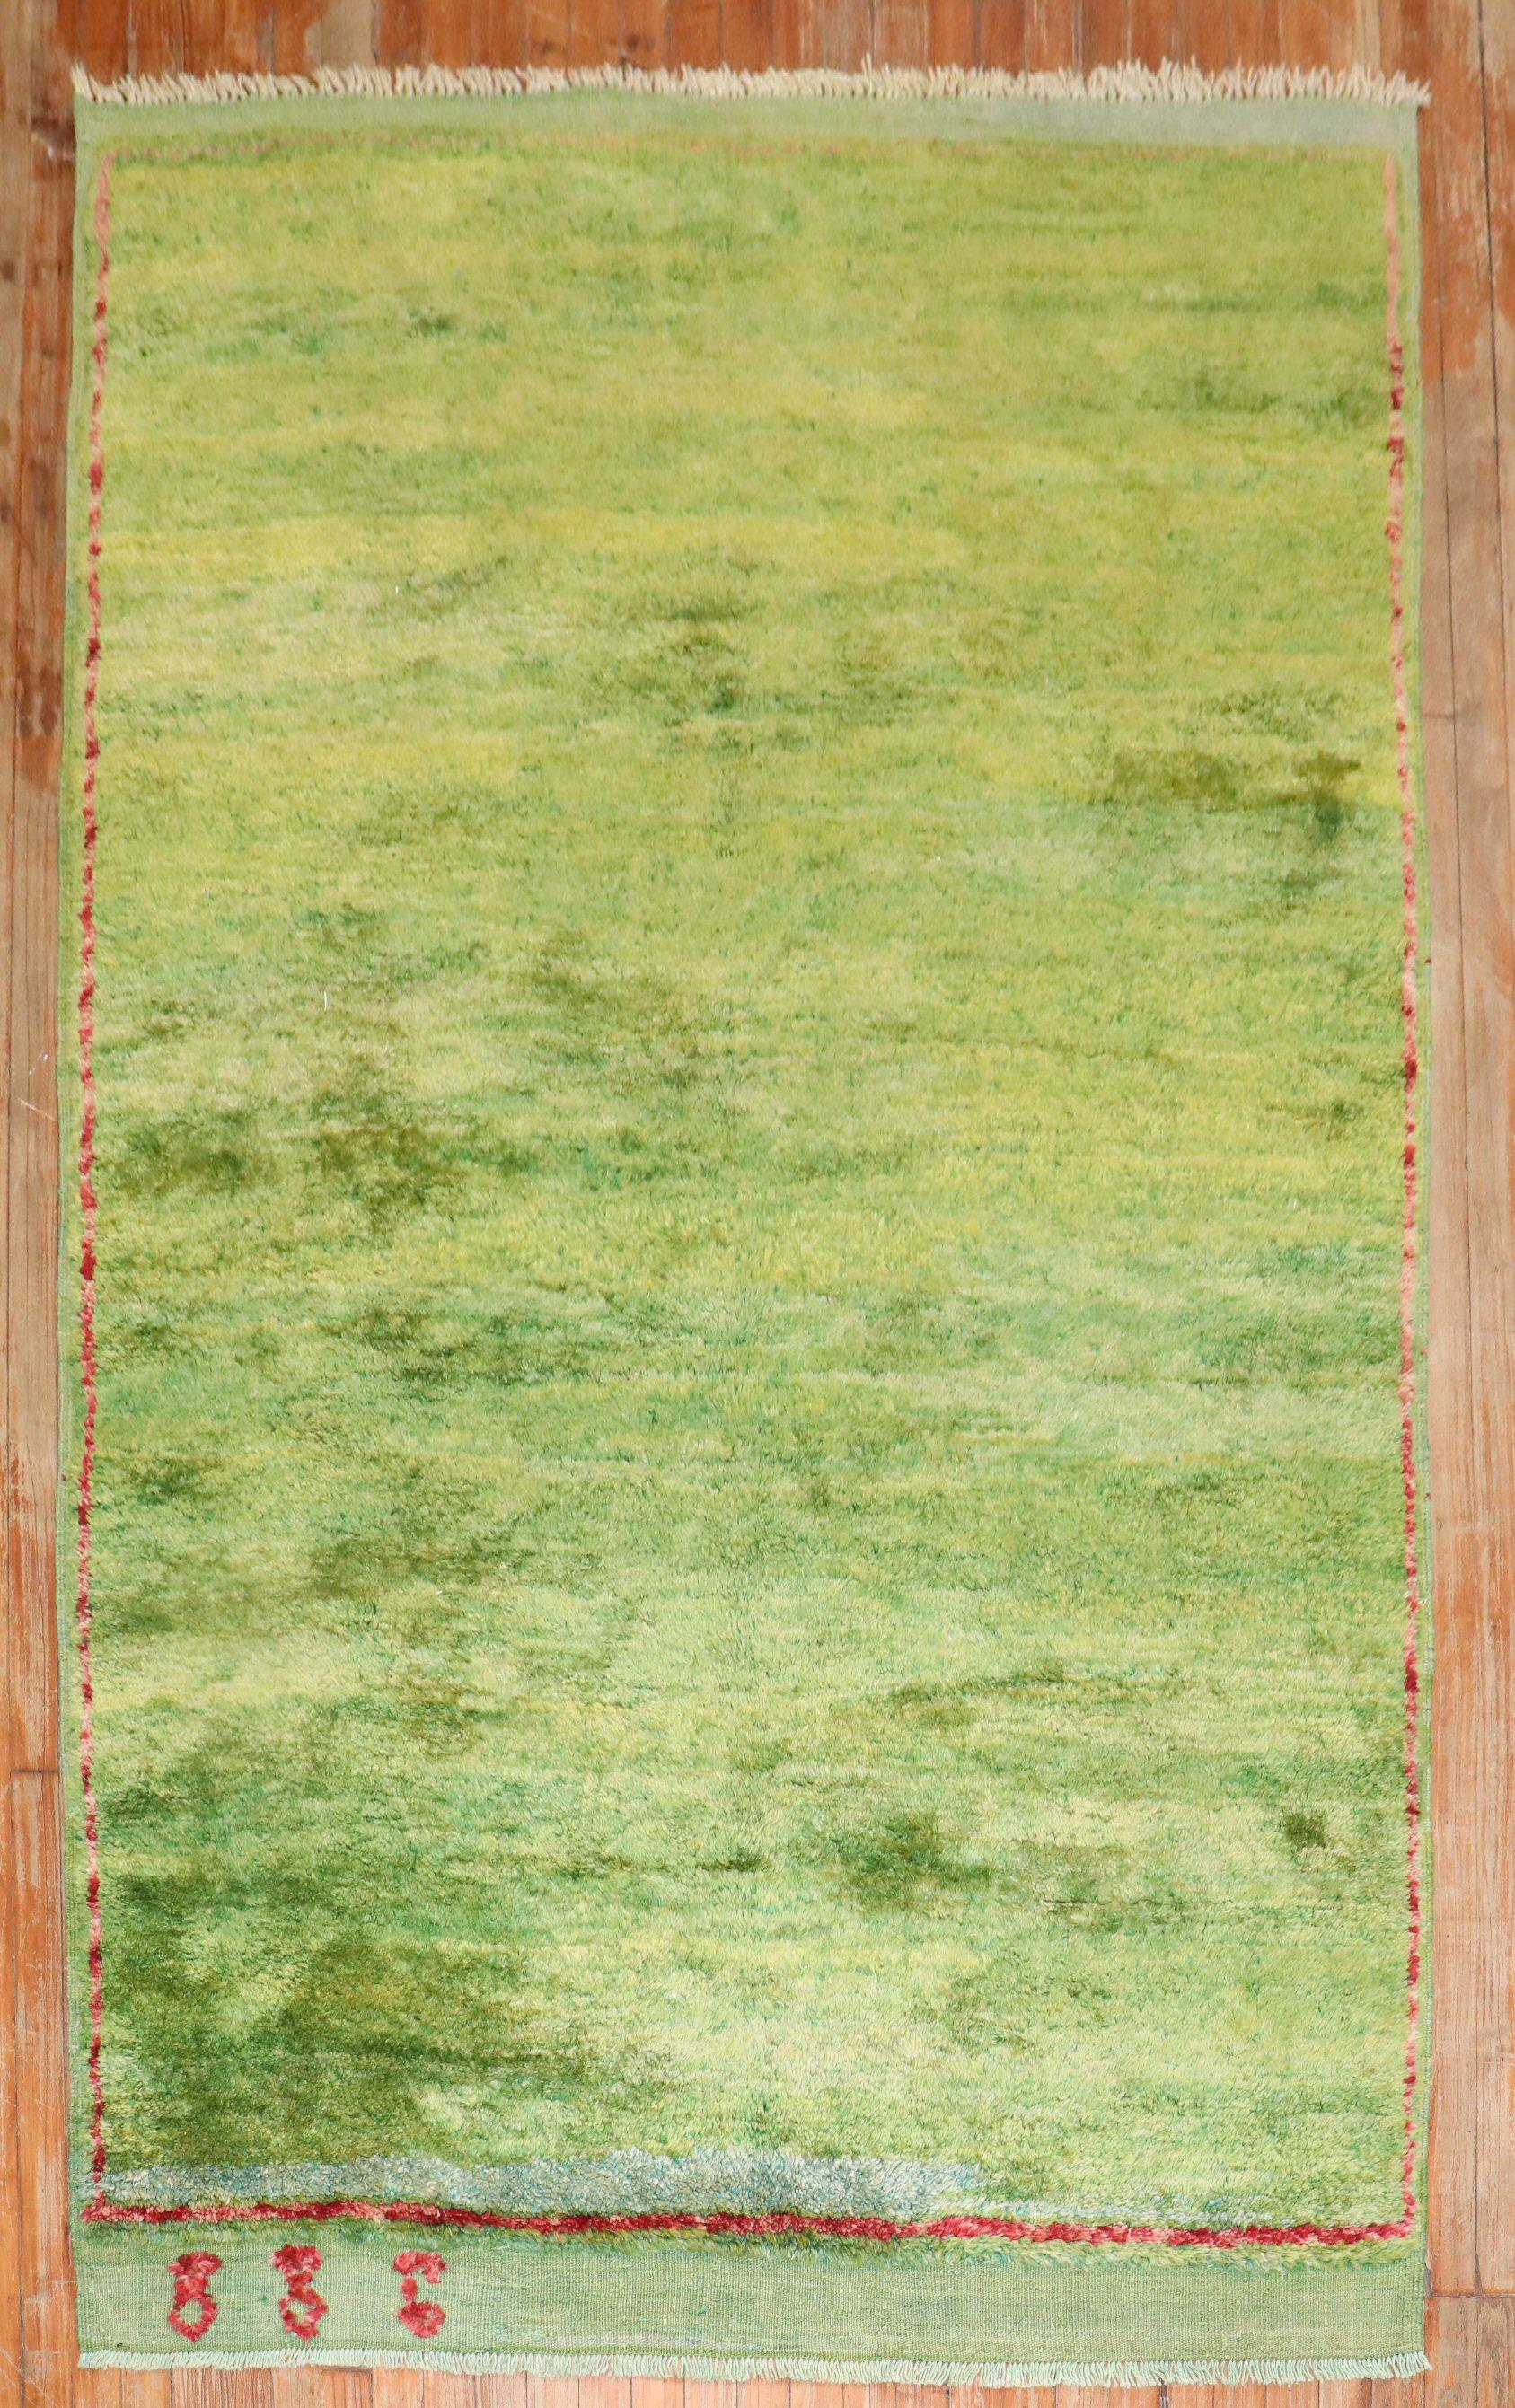 ein einzigartiger türkischer Tulu-Teppich aus dem 3. Quartal des 20. Jahrhunderts in überwiegend grüner Farbe.

5' x 8'2''

Tulus werden seit Jahrhunderten in der Stadt Konya in der Türkei gewebt, wo sie wegen ihres langen Flors und ihrer